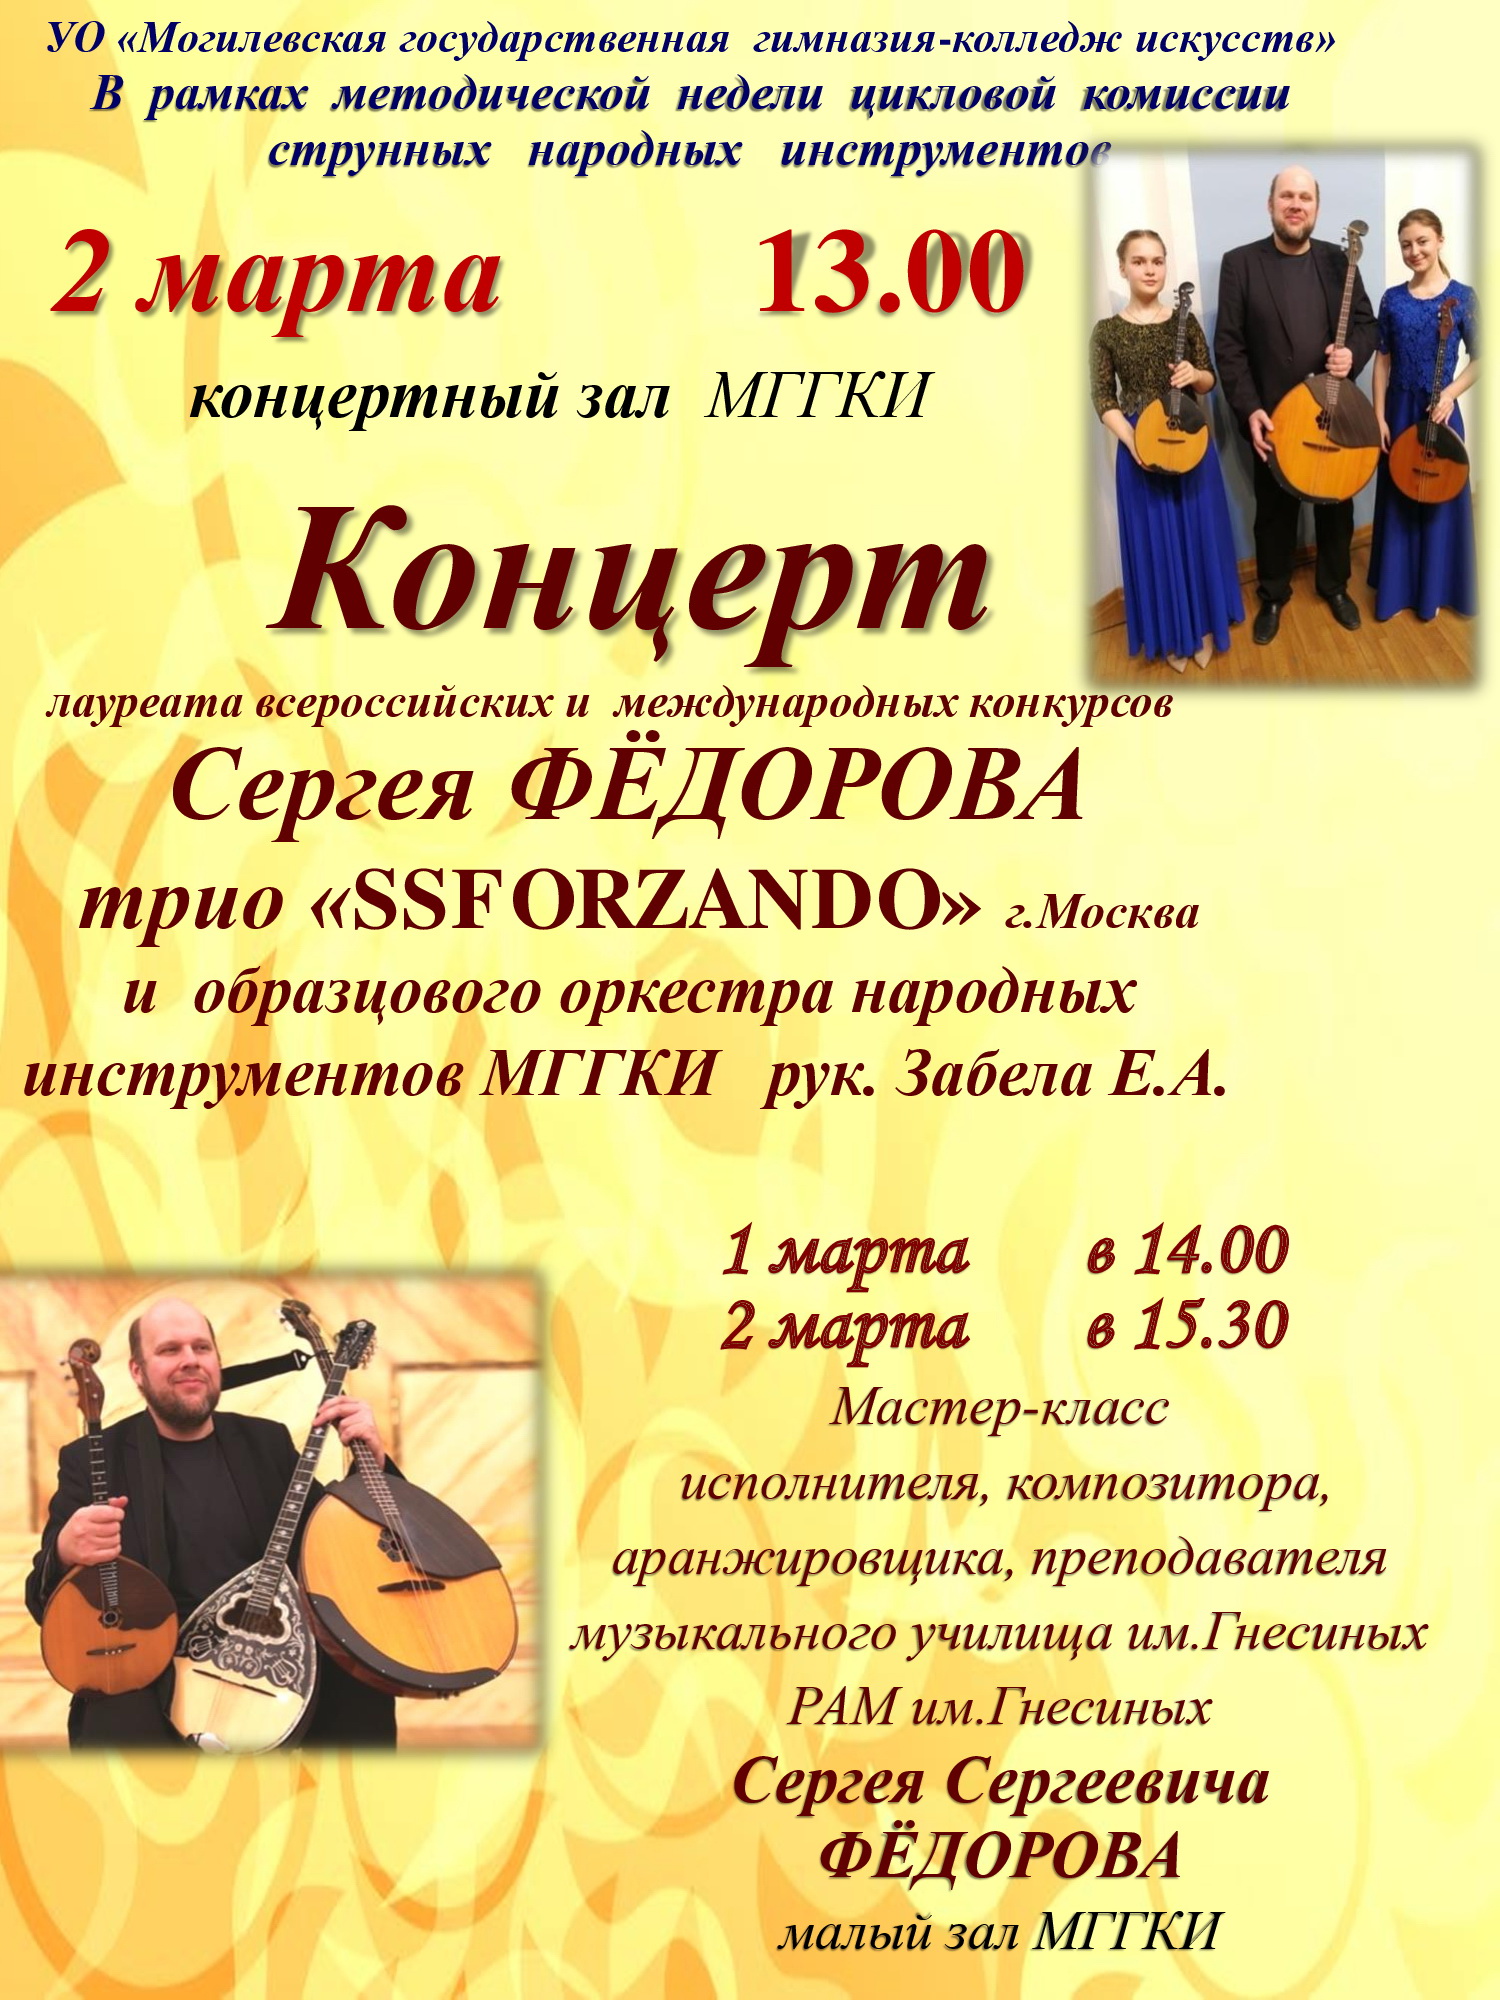 Впервые в Могилёве с концертом выступят Сергей Фёдоров и трио «SSFORZANDO»